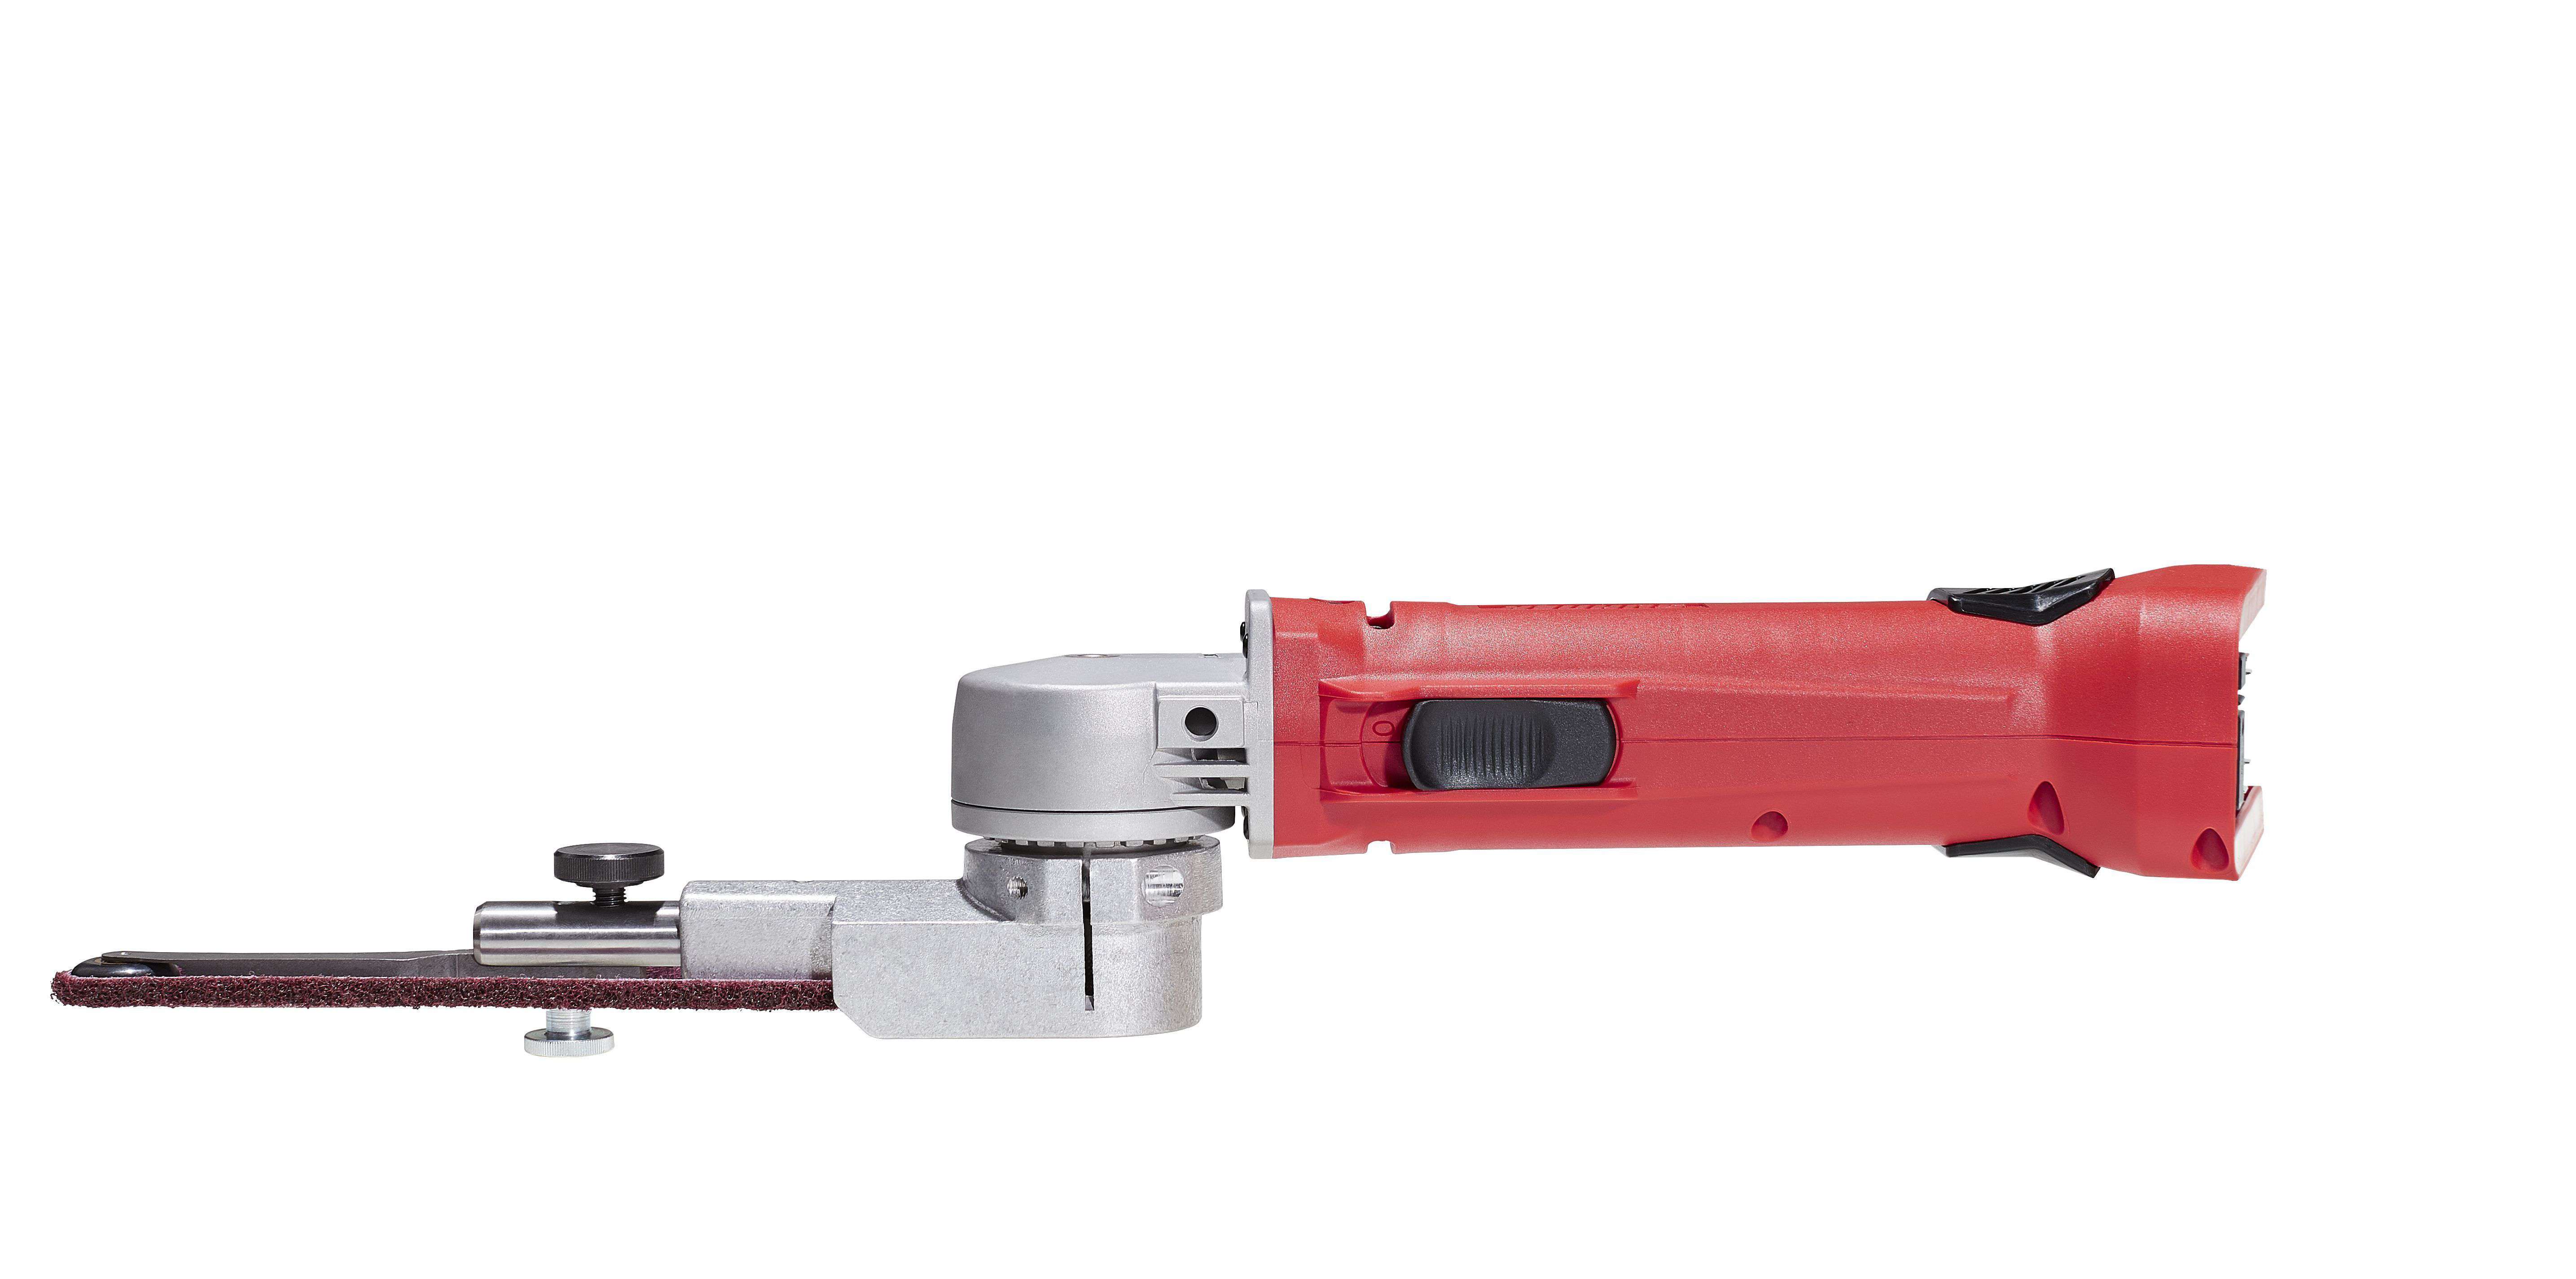 Suhner ABC 7 Belt Grinder, Bare Tool, 20-1/2" Belt, mobile battery belt grinder Speed 7'000 min-¹